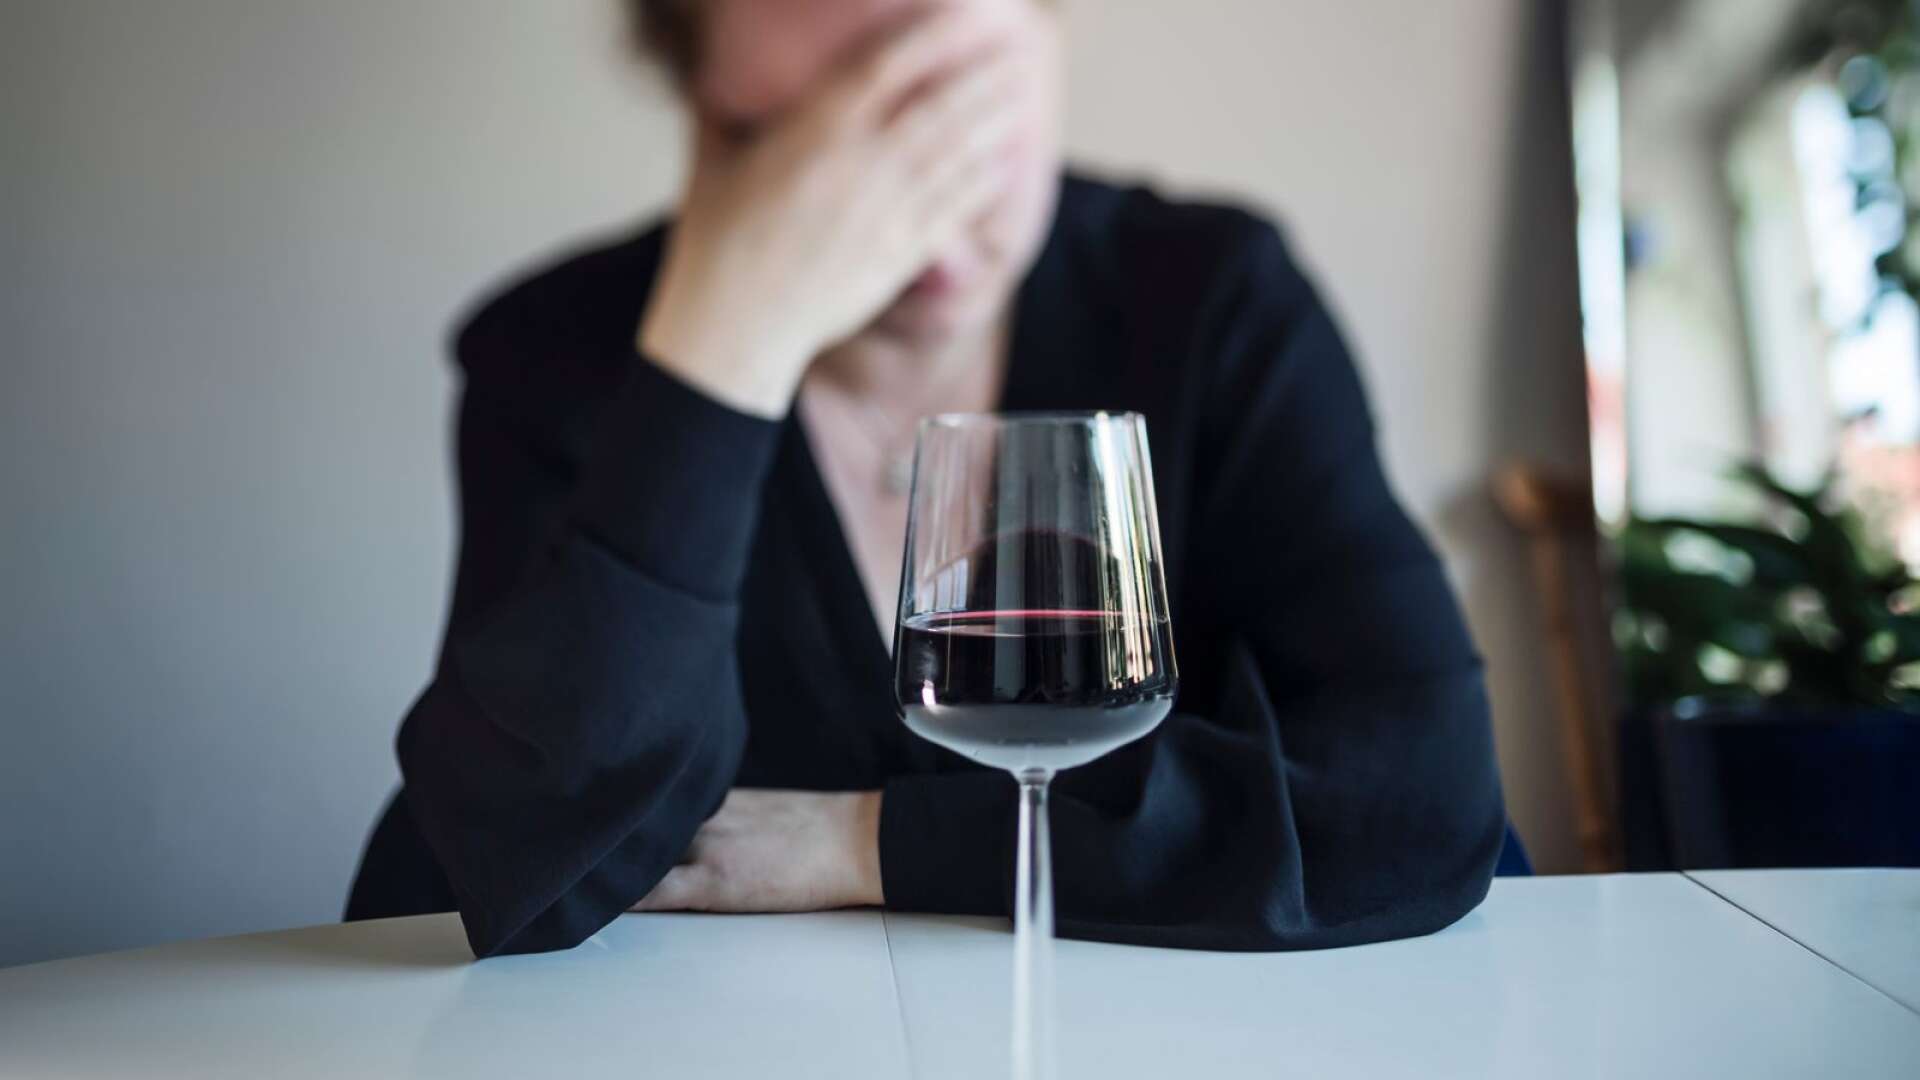 Den som använder alkohol lever mitt i den rådande alkoholnormen och ser inte hur den ibland leder till en konsumtion som inte beror på ett aktivt val, skriver Monica Ståhl och Johnny Mostacero.